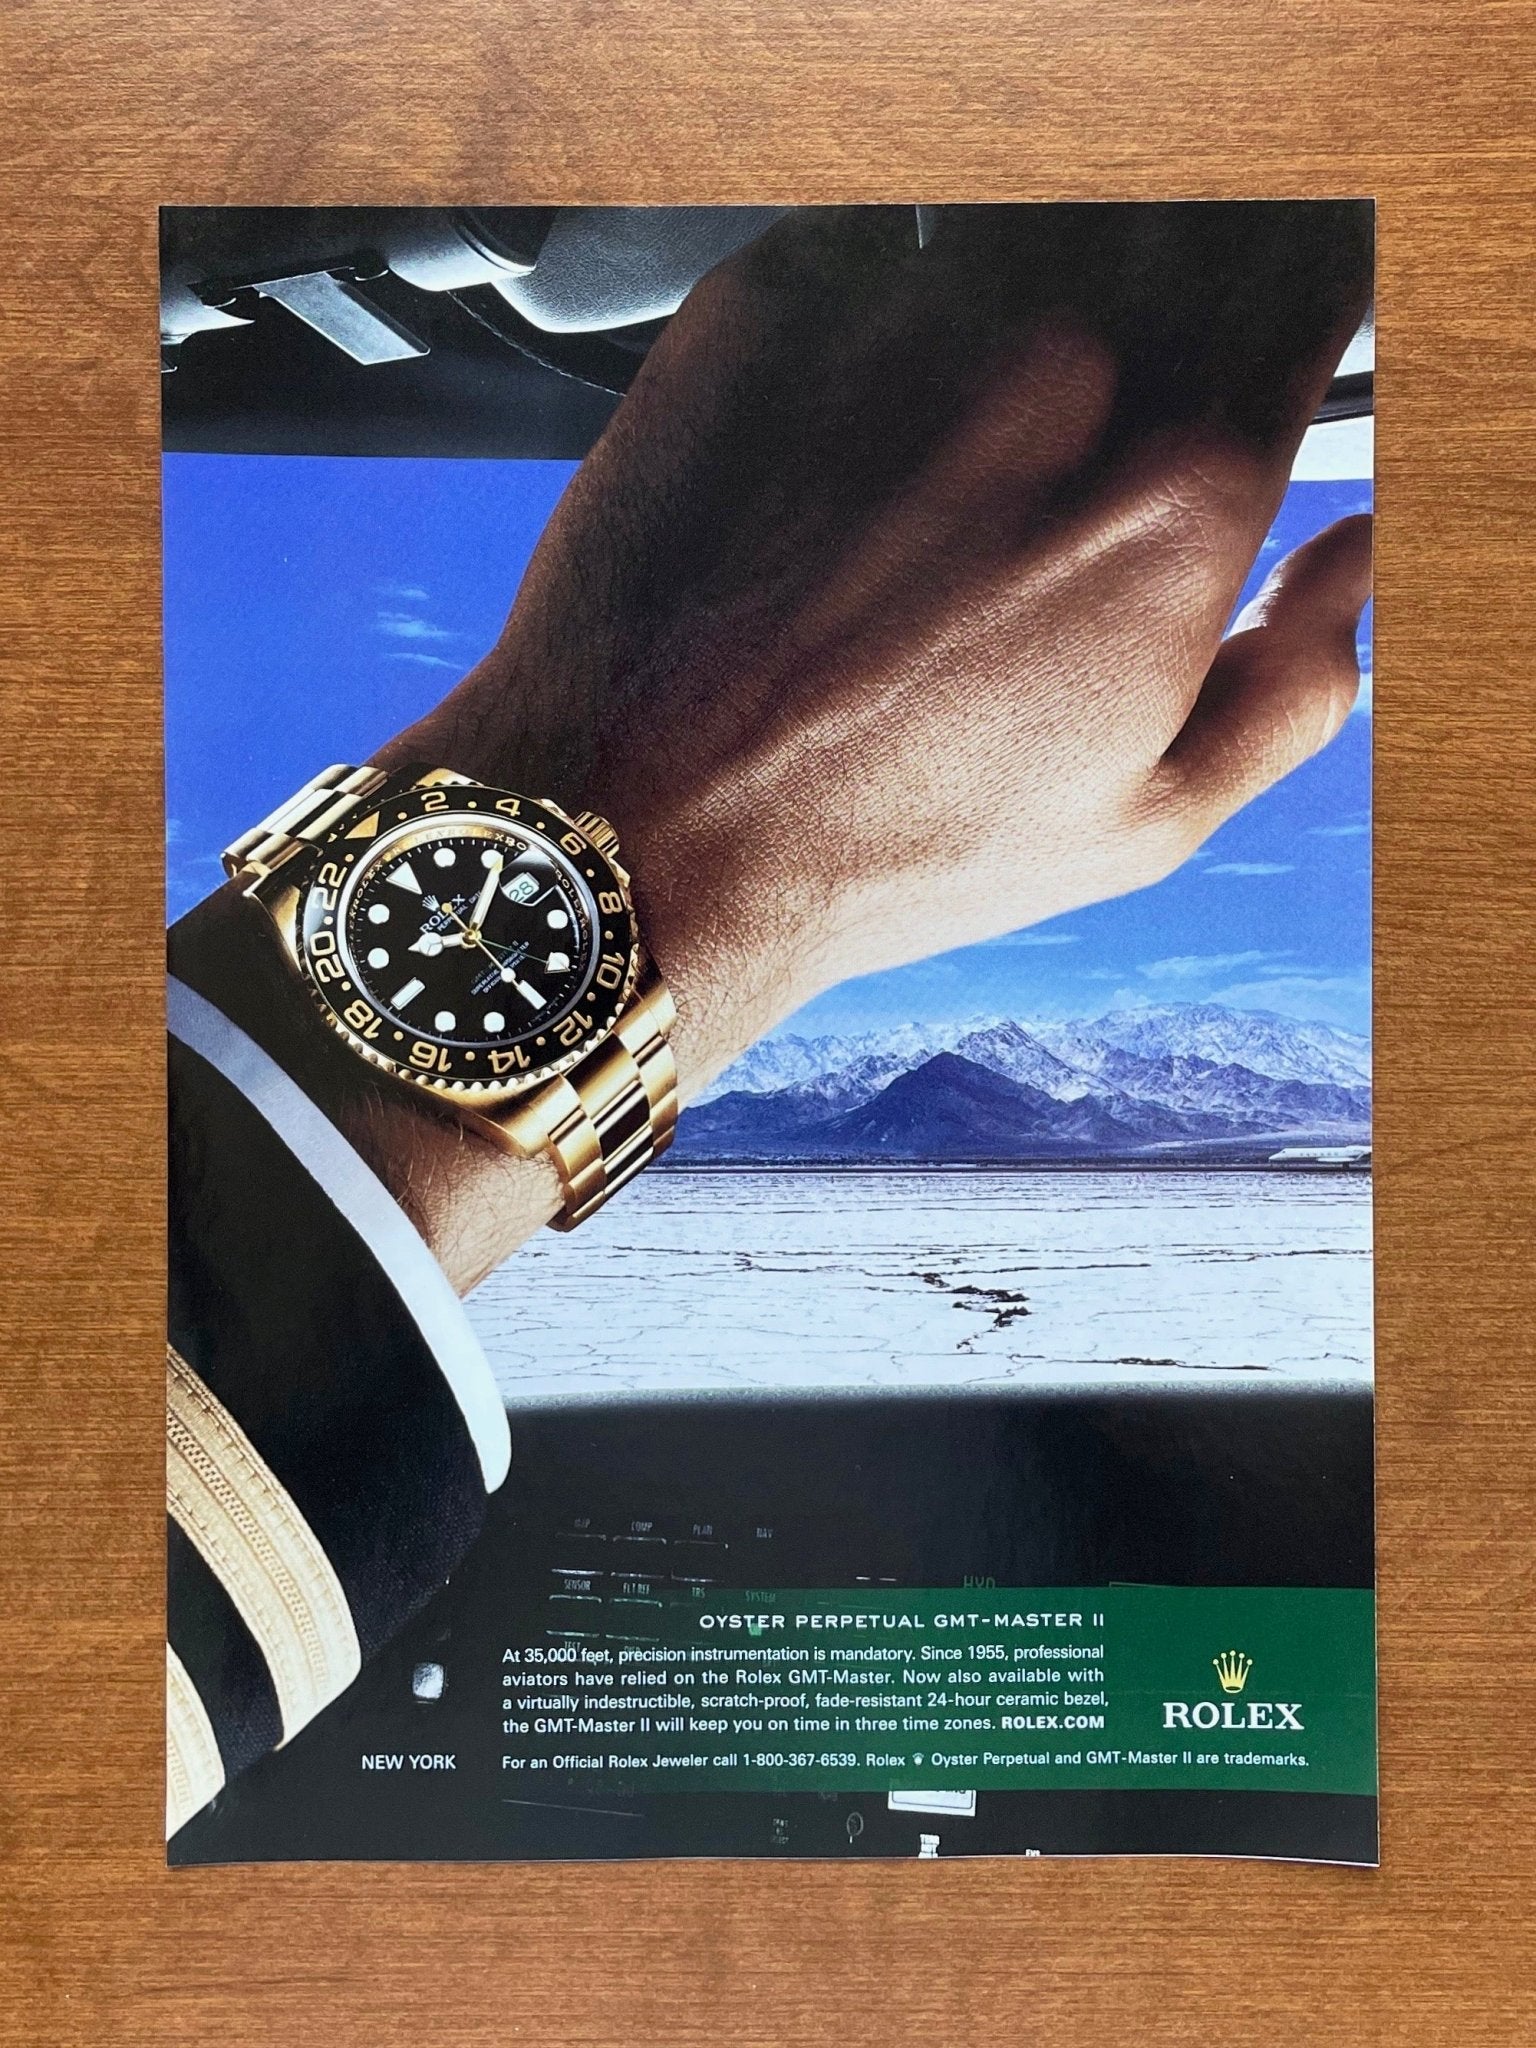 2009 Rolex GMT Master II Ref. 116718 "At 35,000 feet..." Advertisement